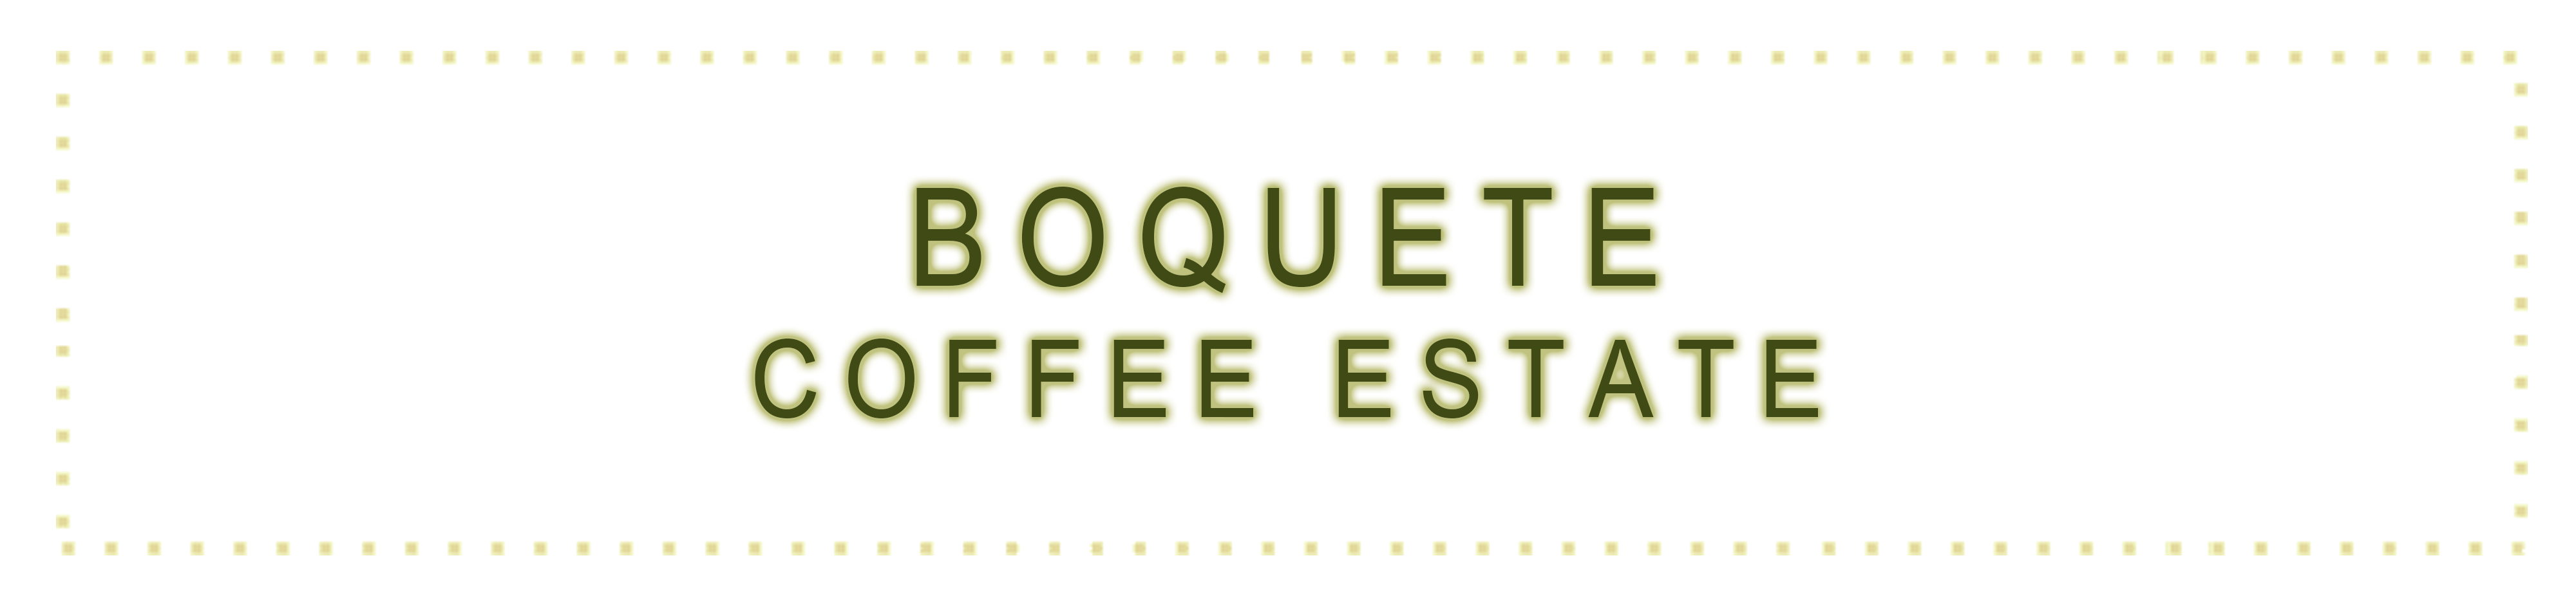 Boquete Coffee Estate